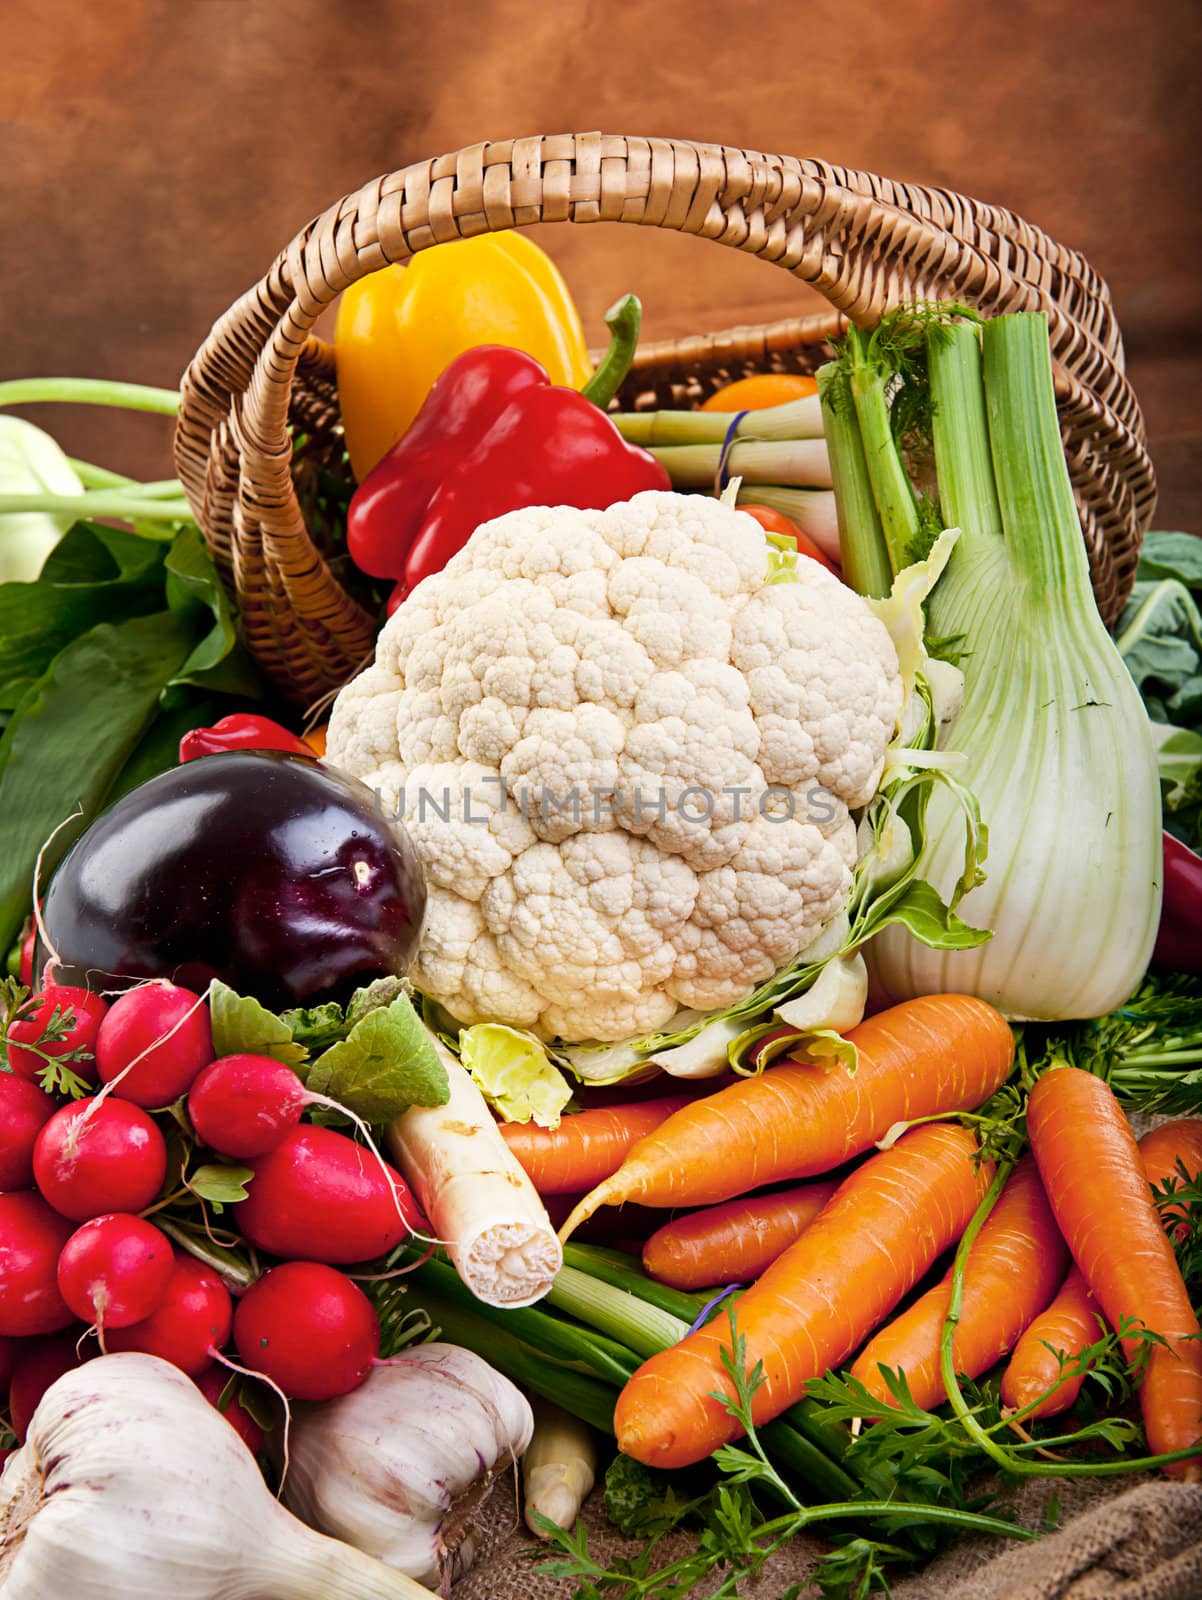 Basket full of various fresh organic vegetables from the garden